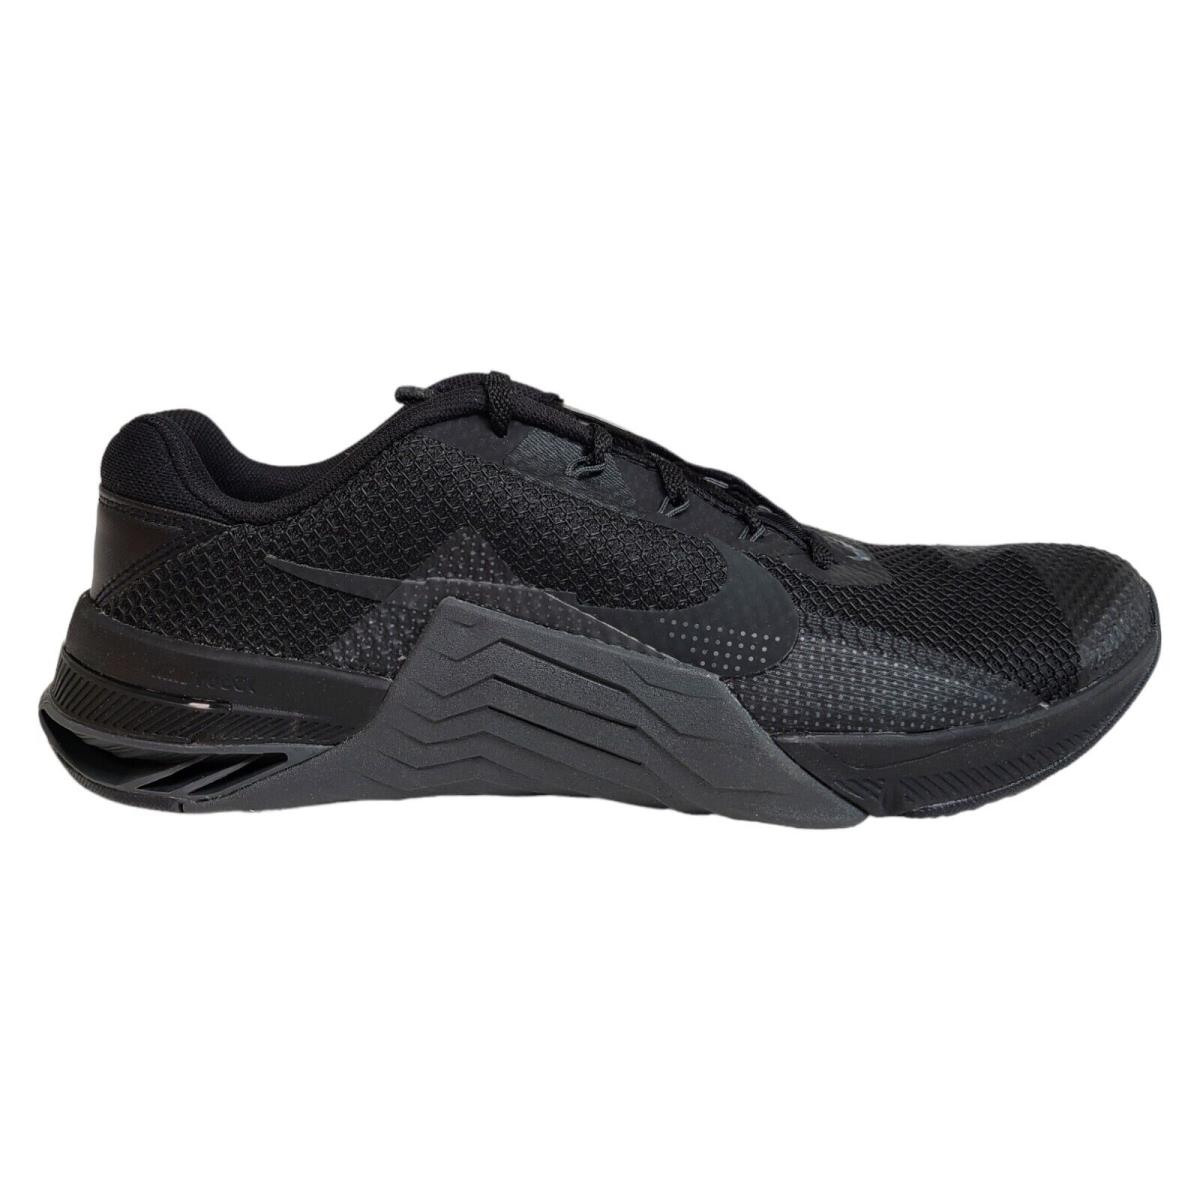 Nike Mens 10 12 13 Metcon 7 Triple Black Crossfit Gym Training Shoes CZ8281-001 - Black